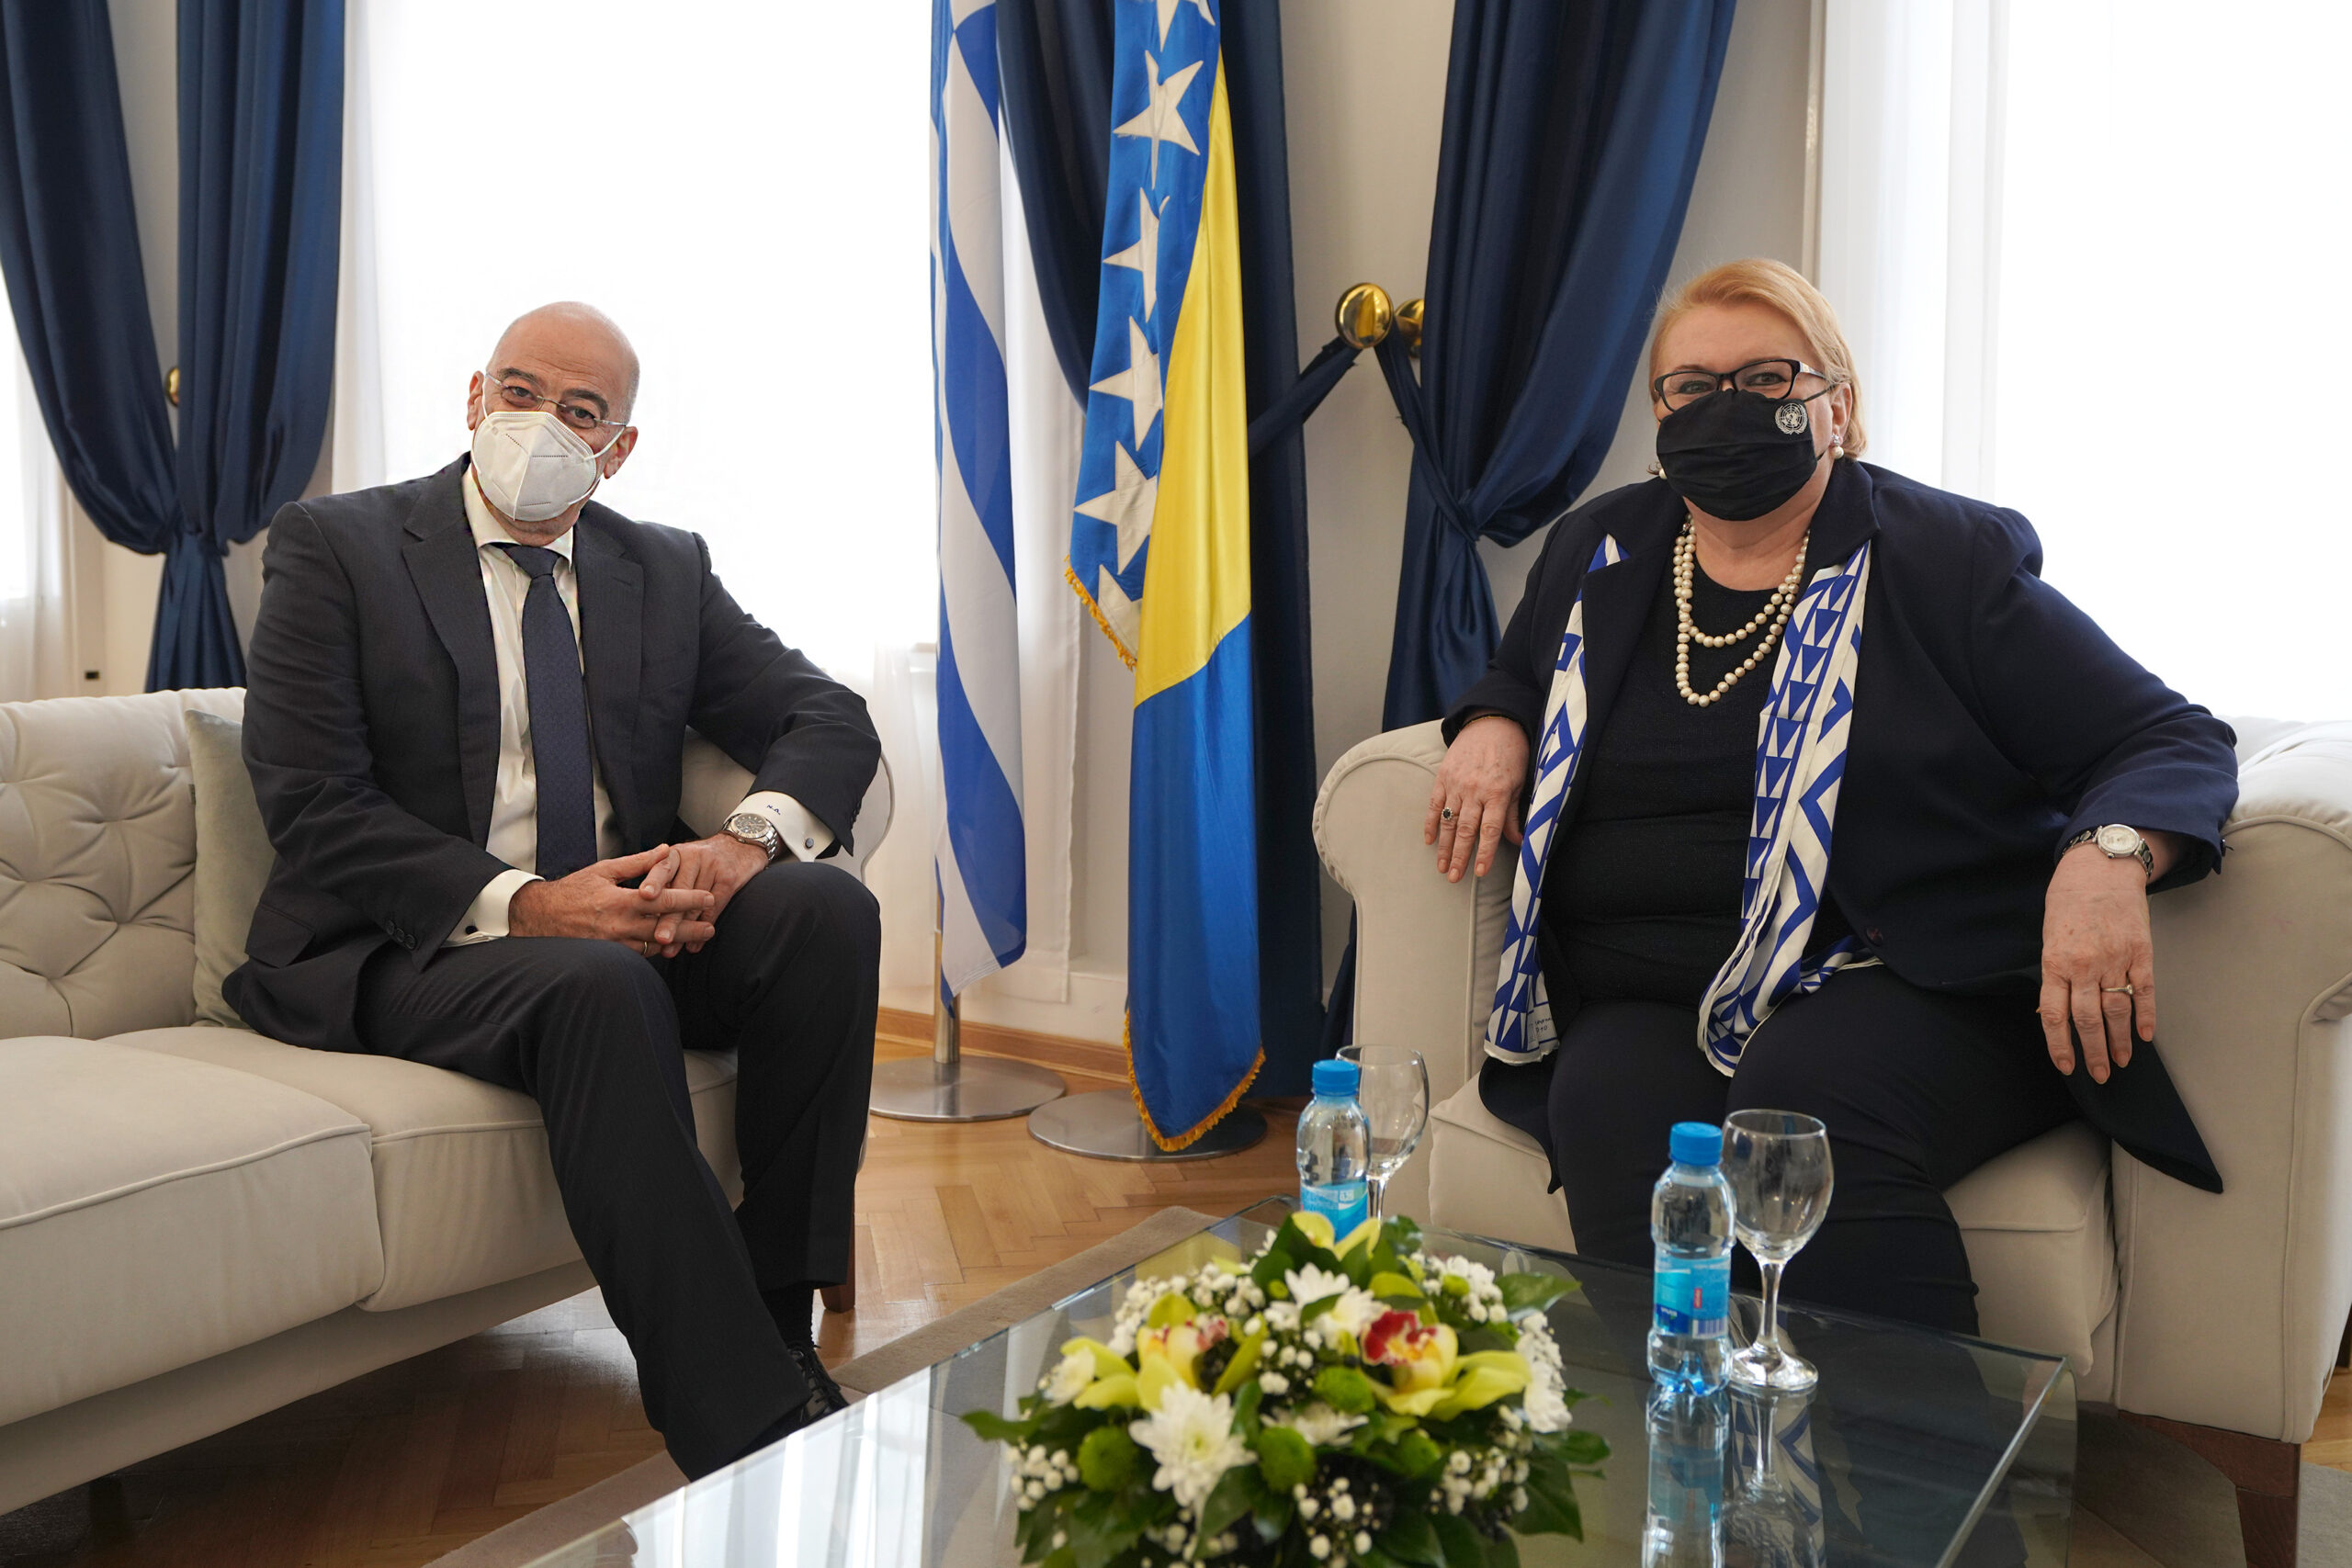 Επίσκεψη Υπουργού Εξωτερικών, Νίκου Δένδια, στη Βοσνία και Ερζεγοβίνη. Συναντήθηκε στο Σεράγεβο με την ομόλογό του, Δρ. Bisera Turković, Αναπληρώτρια Πρόεδρο του Συμβουλίου Υπουργών και Υπουργό Εξωτερικών της Βοσνίας και Ερζεγοβίνης, ( Σαράγεβο, 29.01.2021)